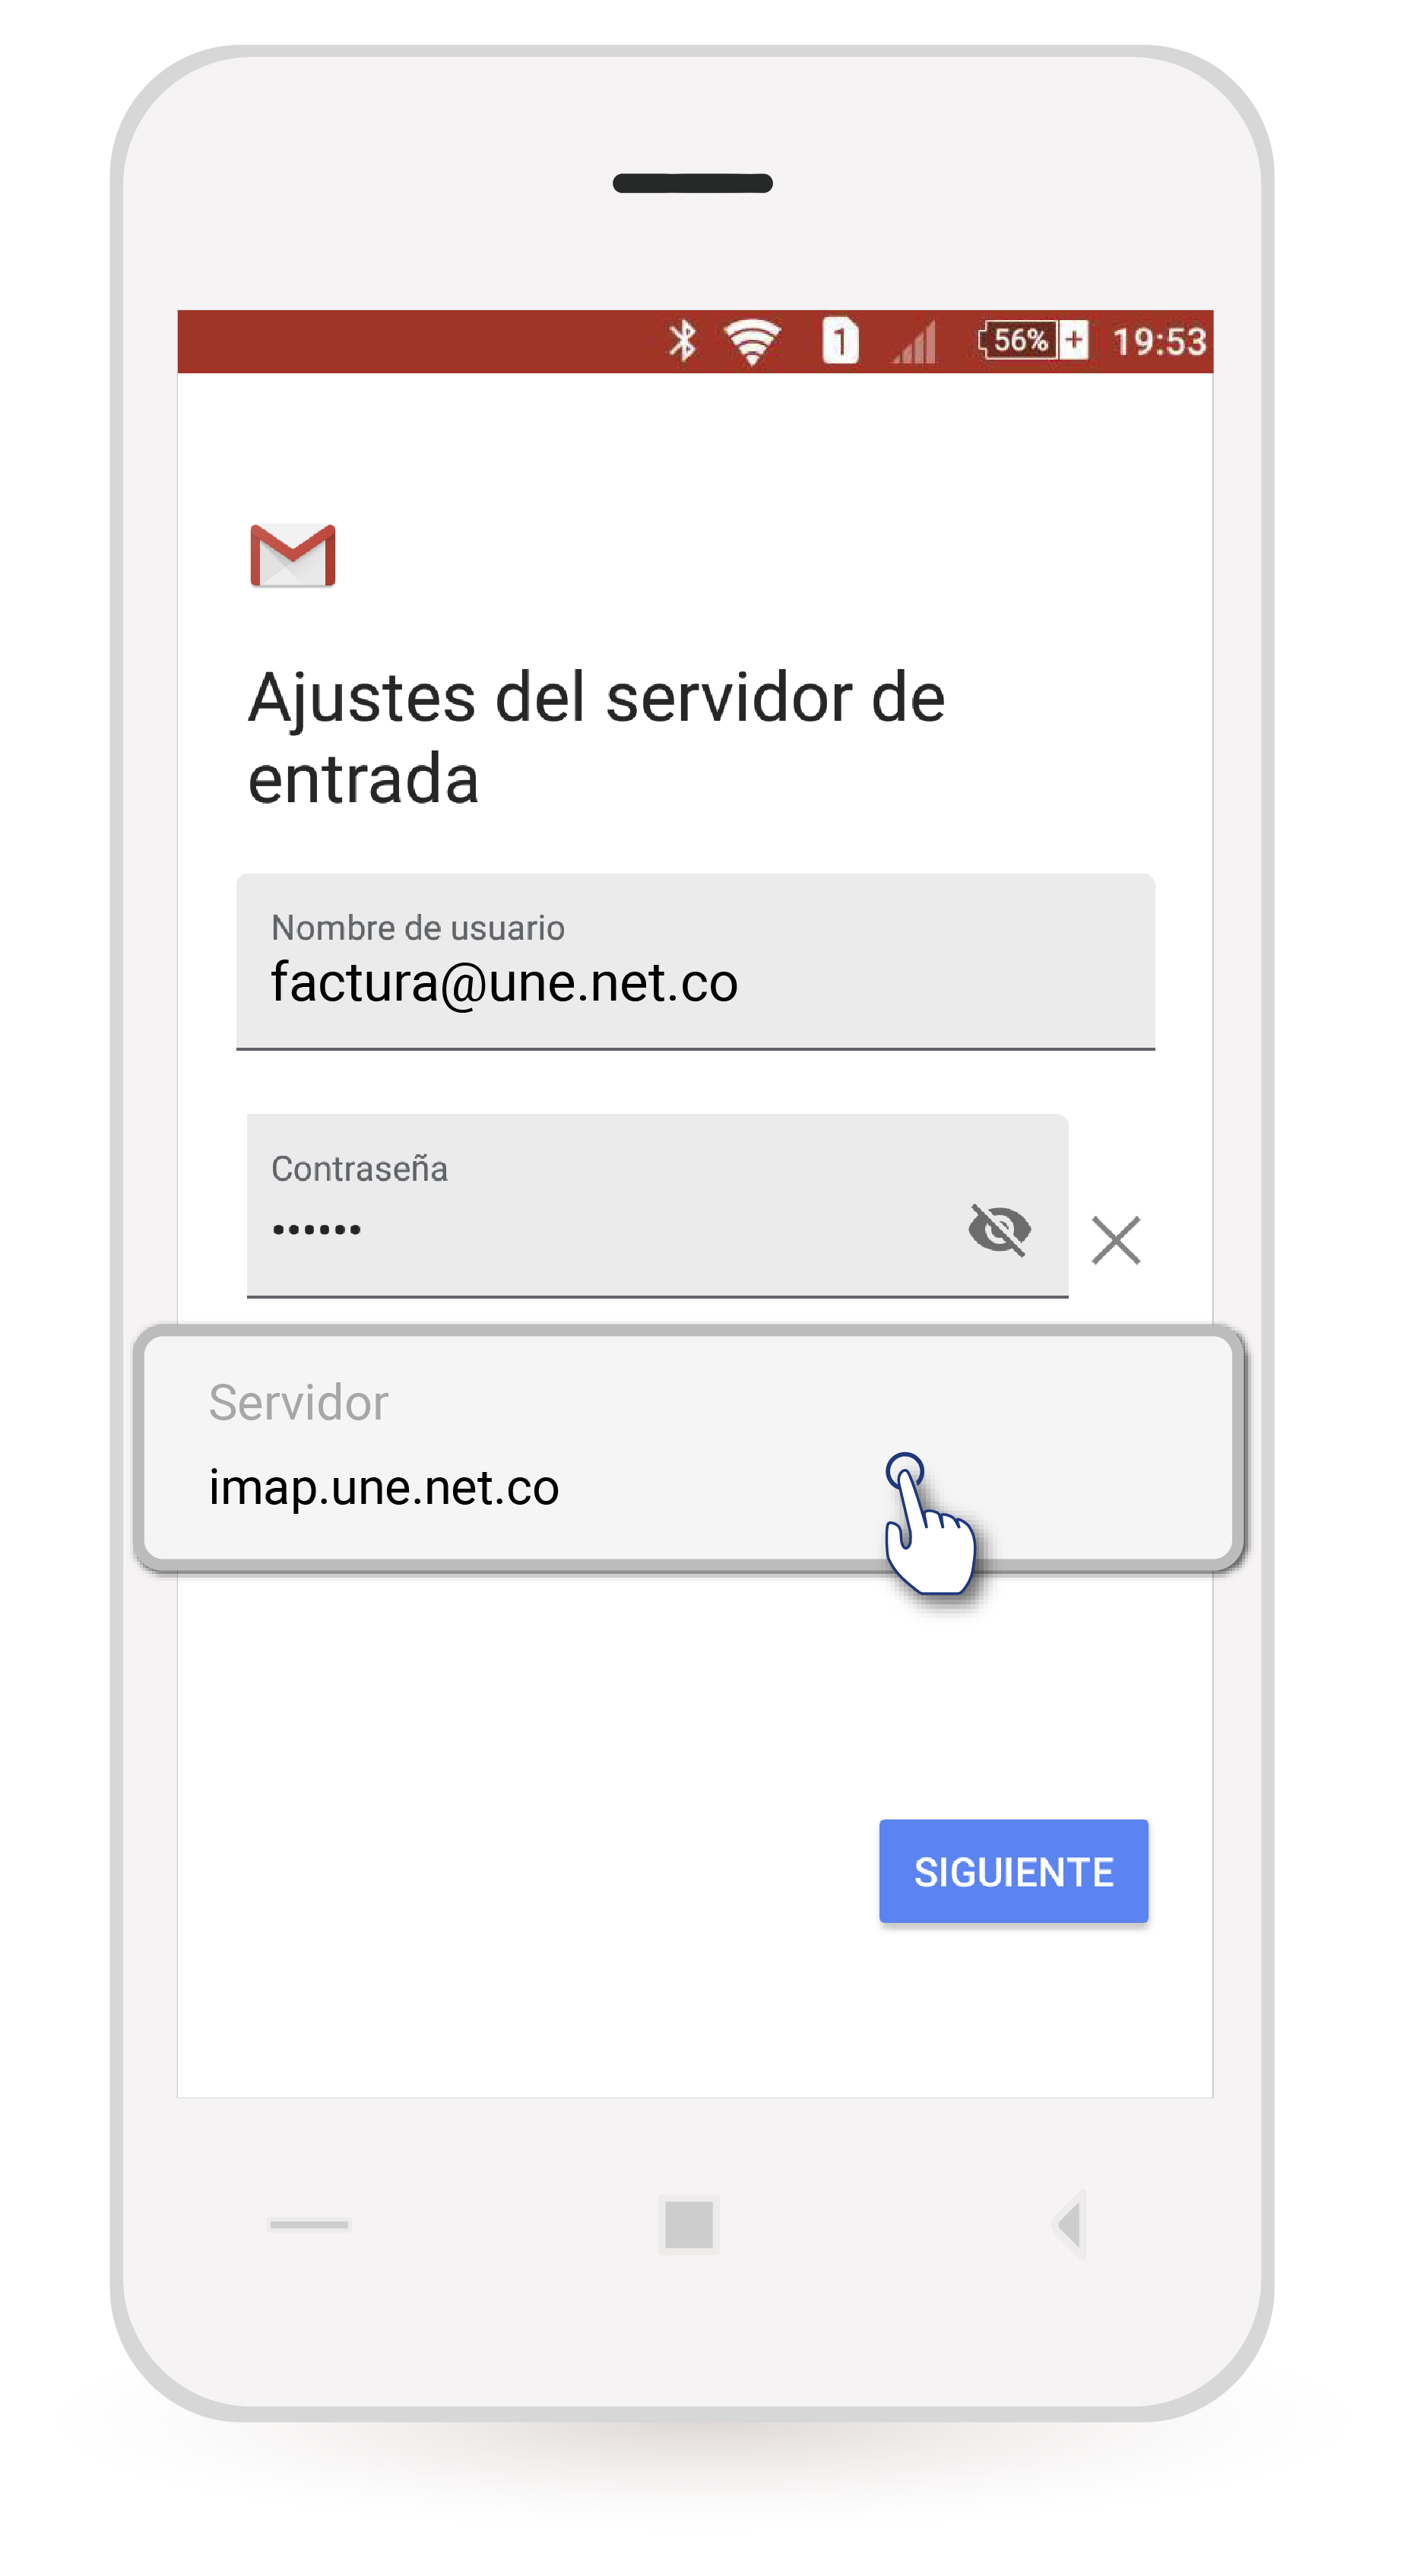 aw-Android-Gmail-TigoUne